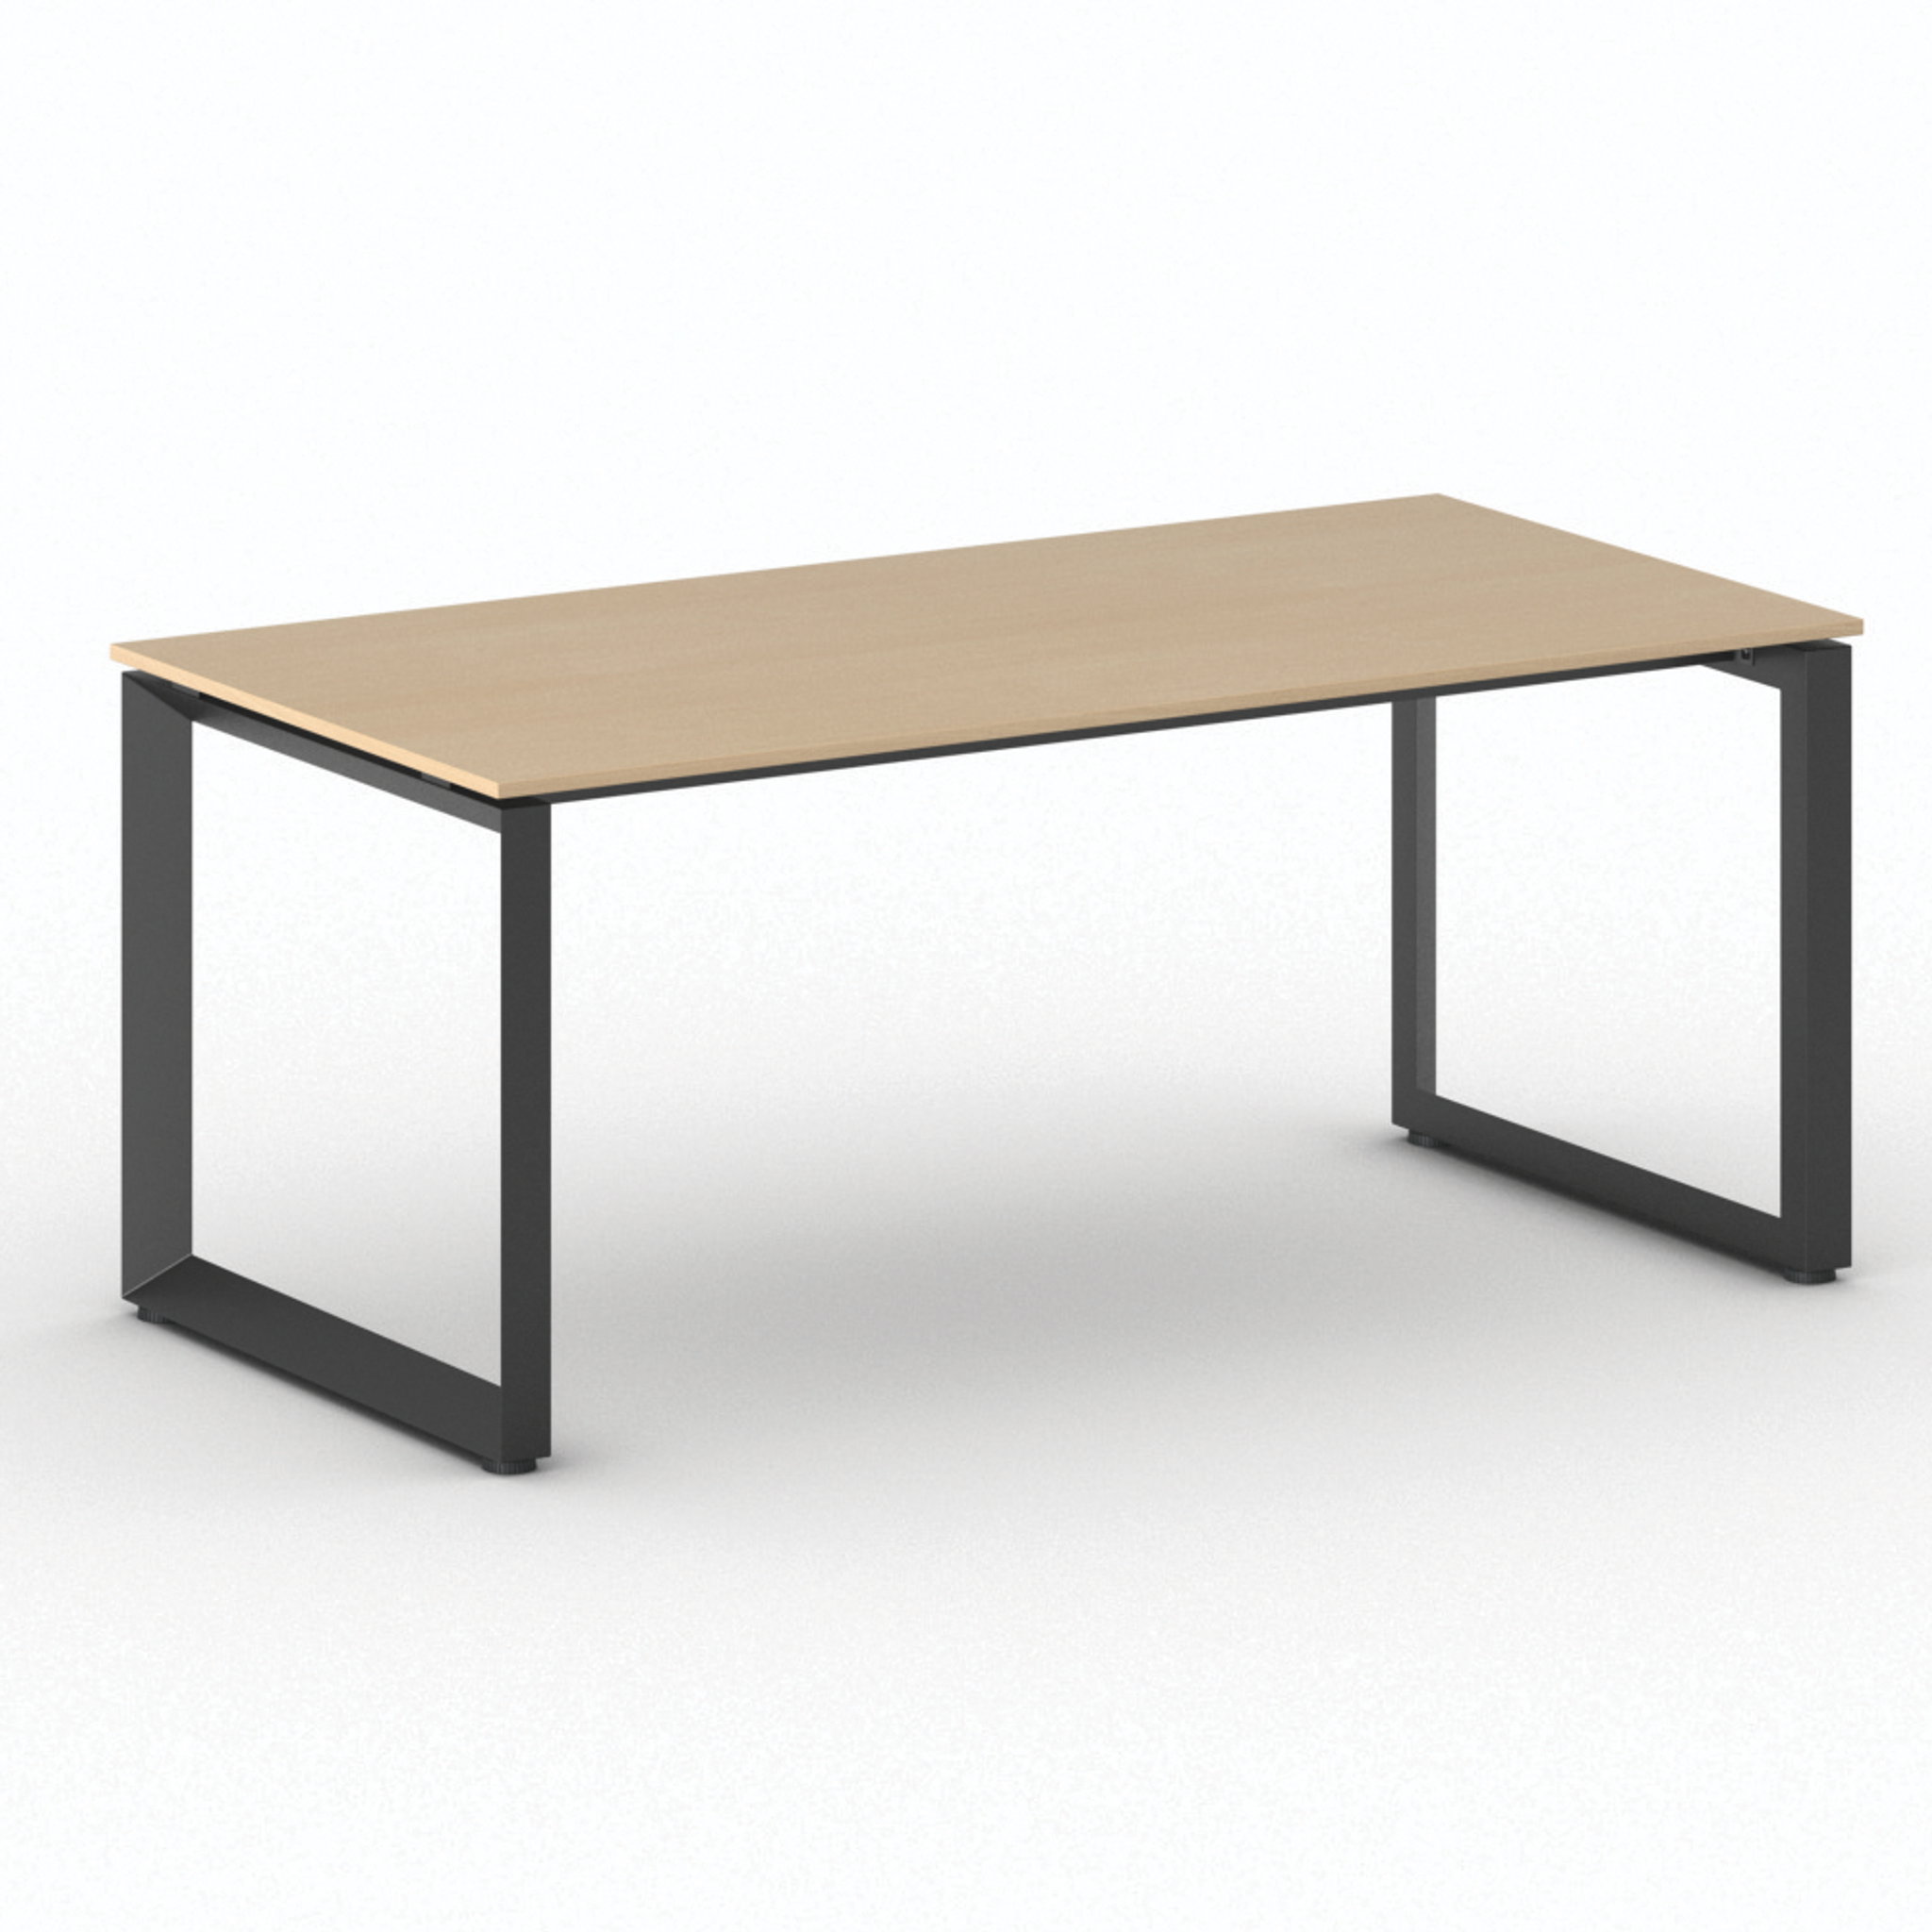 Stół konferencyjny PRIMO INSPIRE 1800 x 900 x 750 mm, buk